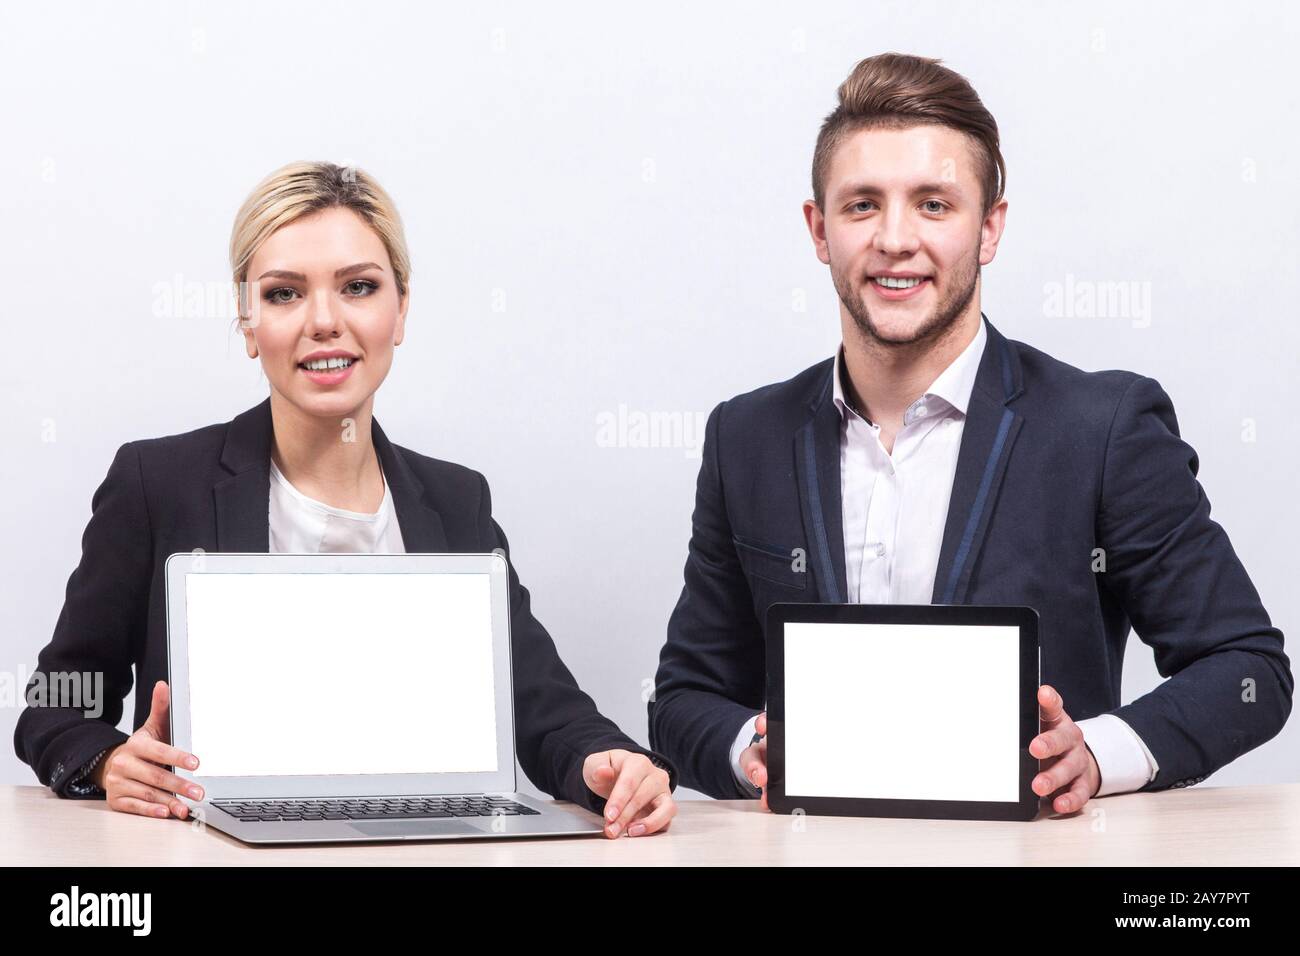 Bild des Teams von Büroangestellten, die beide ein Tablet halten Stockfoto